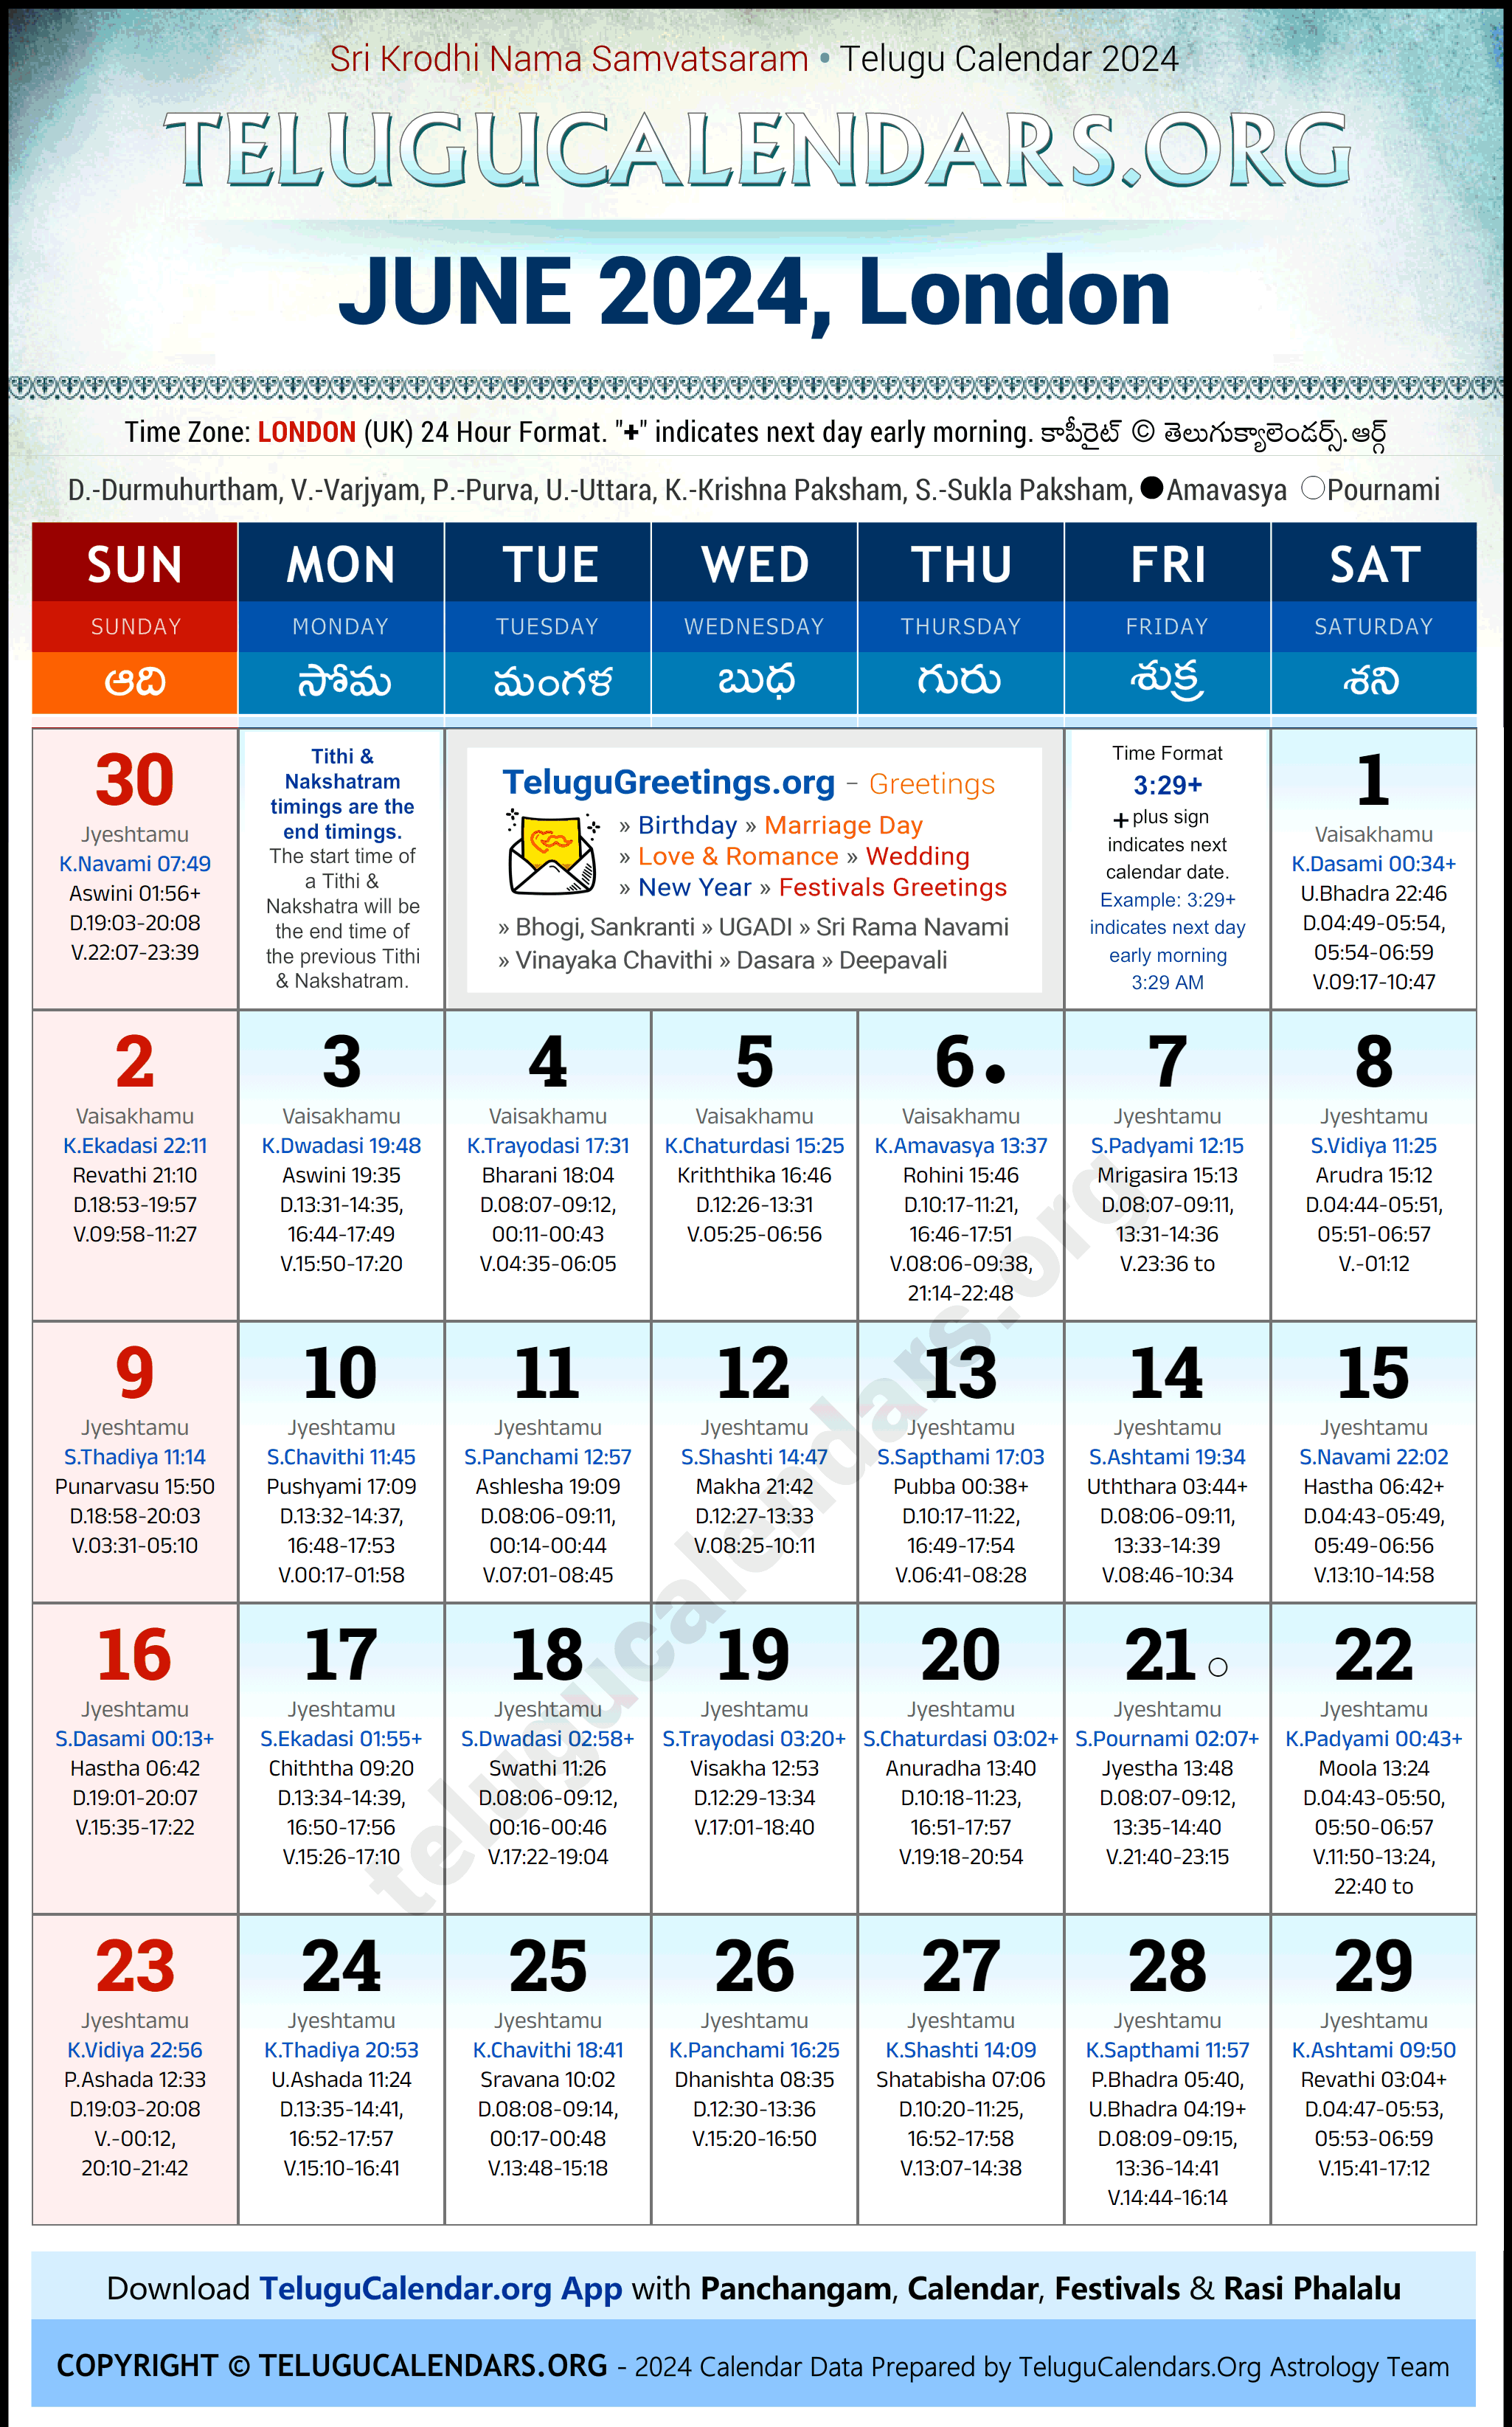 Telugu Calendar 2024 June Festivals for London